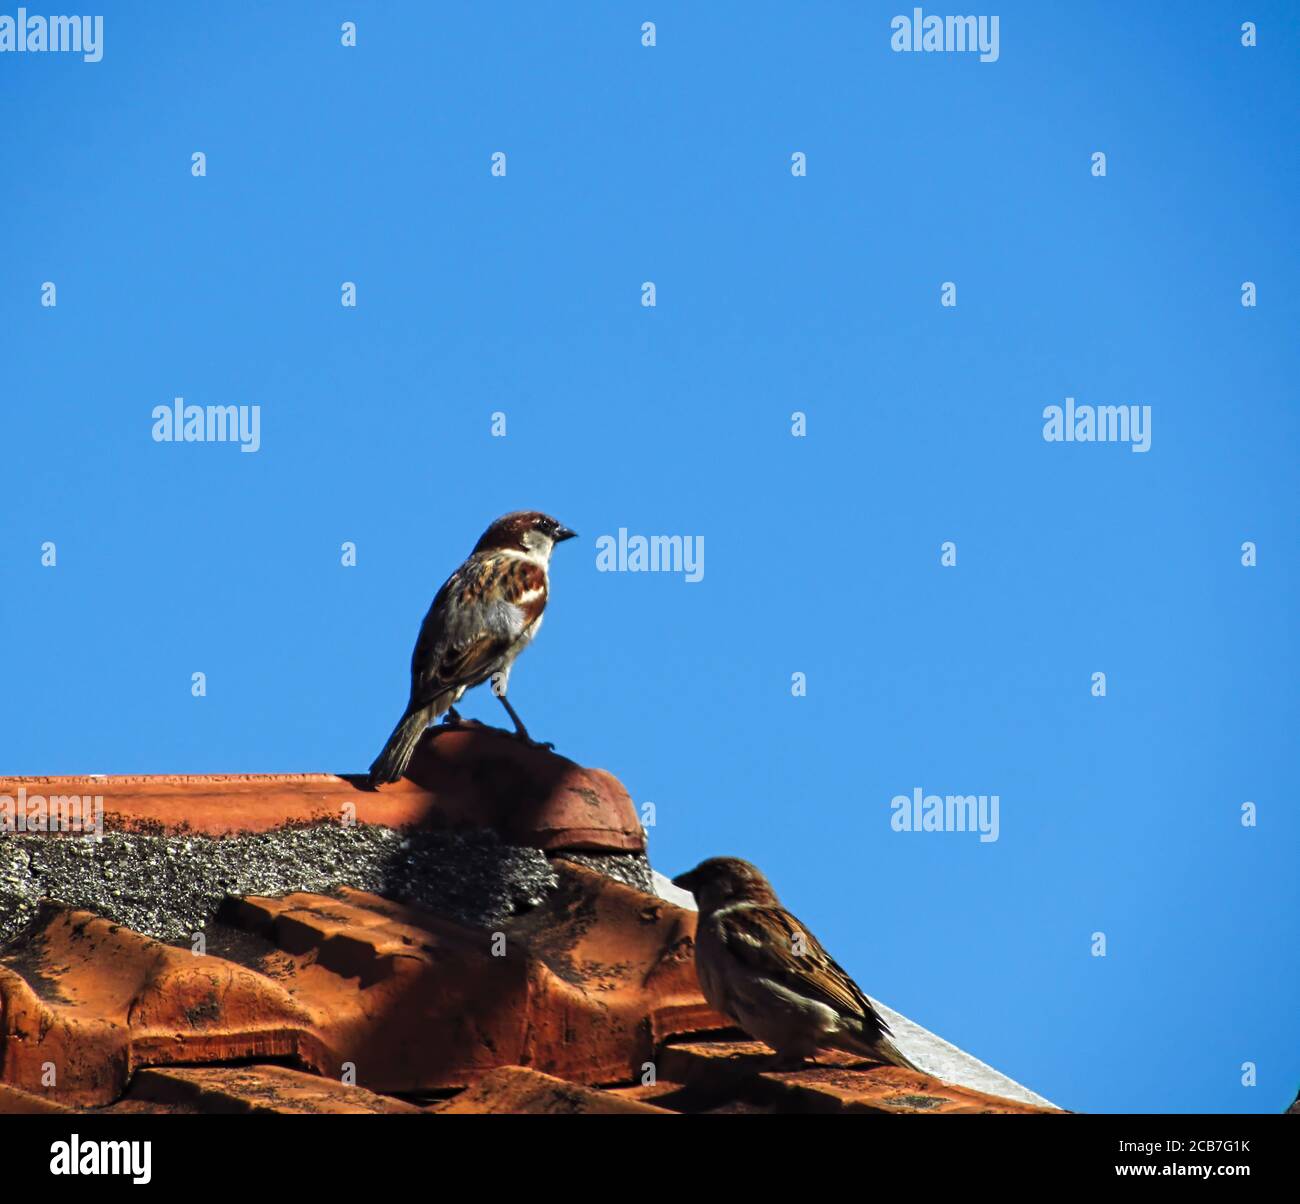 Kleiner Sperling in aufwachenden Position, auf dem Dach, unter einem sehr blauen Himmel. Stockfoto